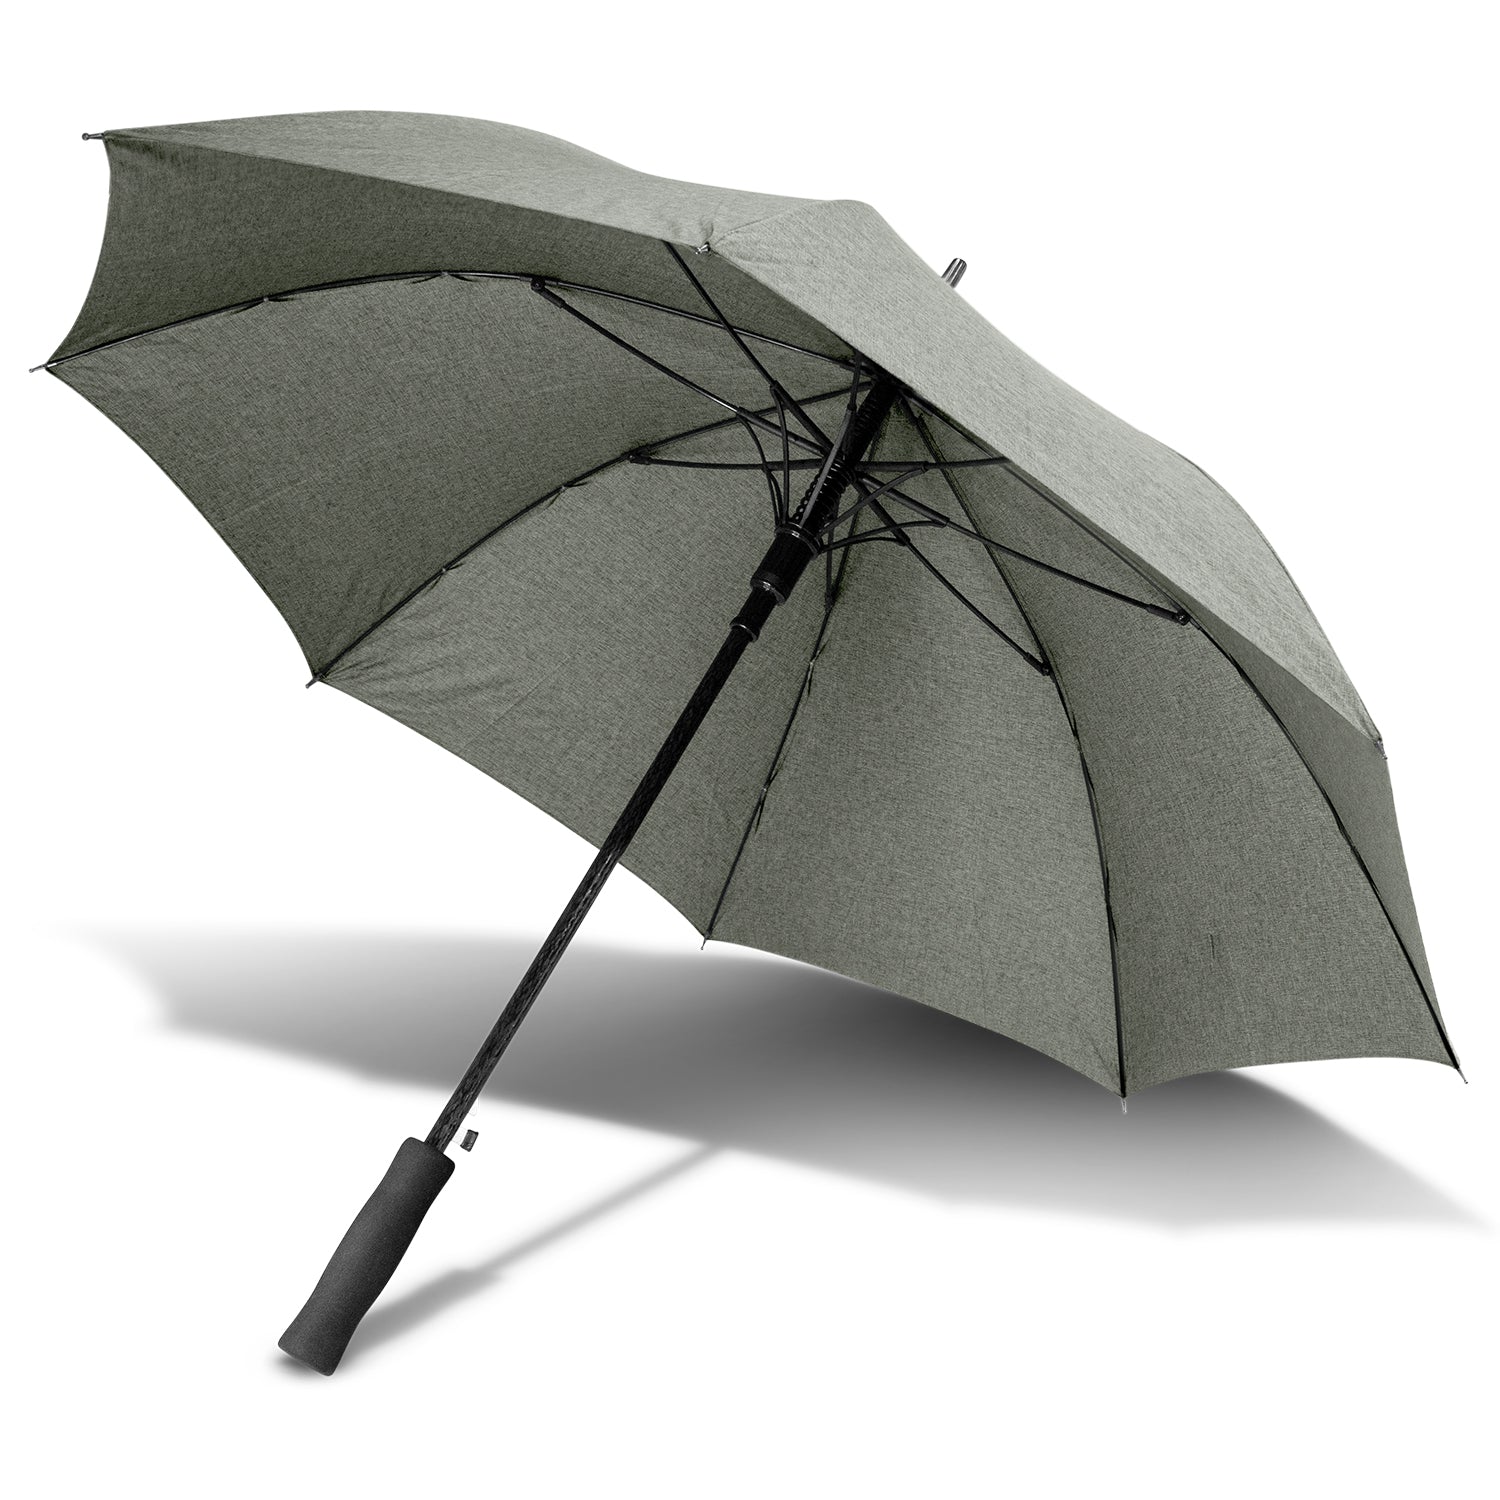 STORM-PROOF®️-heavy-duty-personal-umbrella-windproof-umbrella-auto-open-heather-grey-umbrella-2